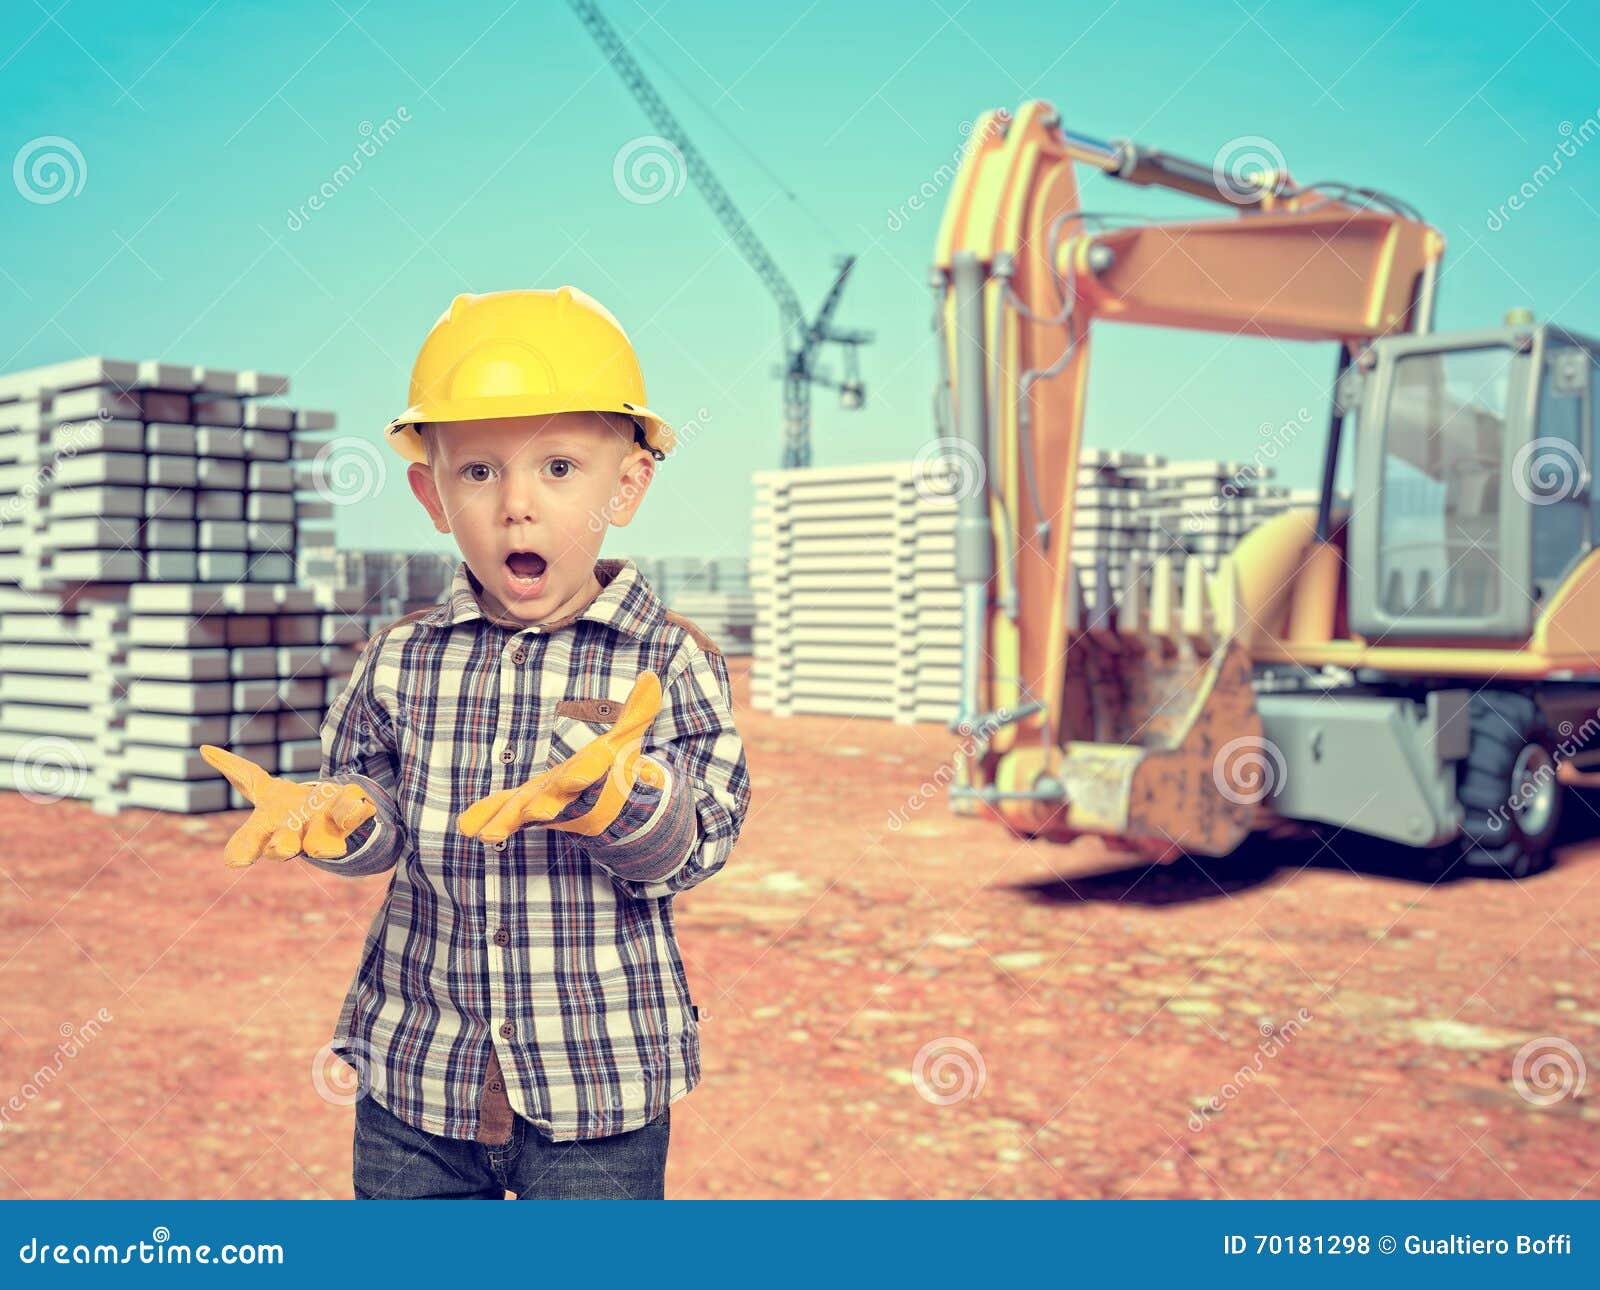 Chantier D'enfant Et De Construction Photo stock - Image du amusement,  extérieur: 70181298